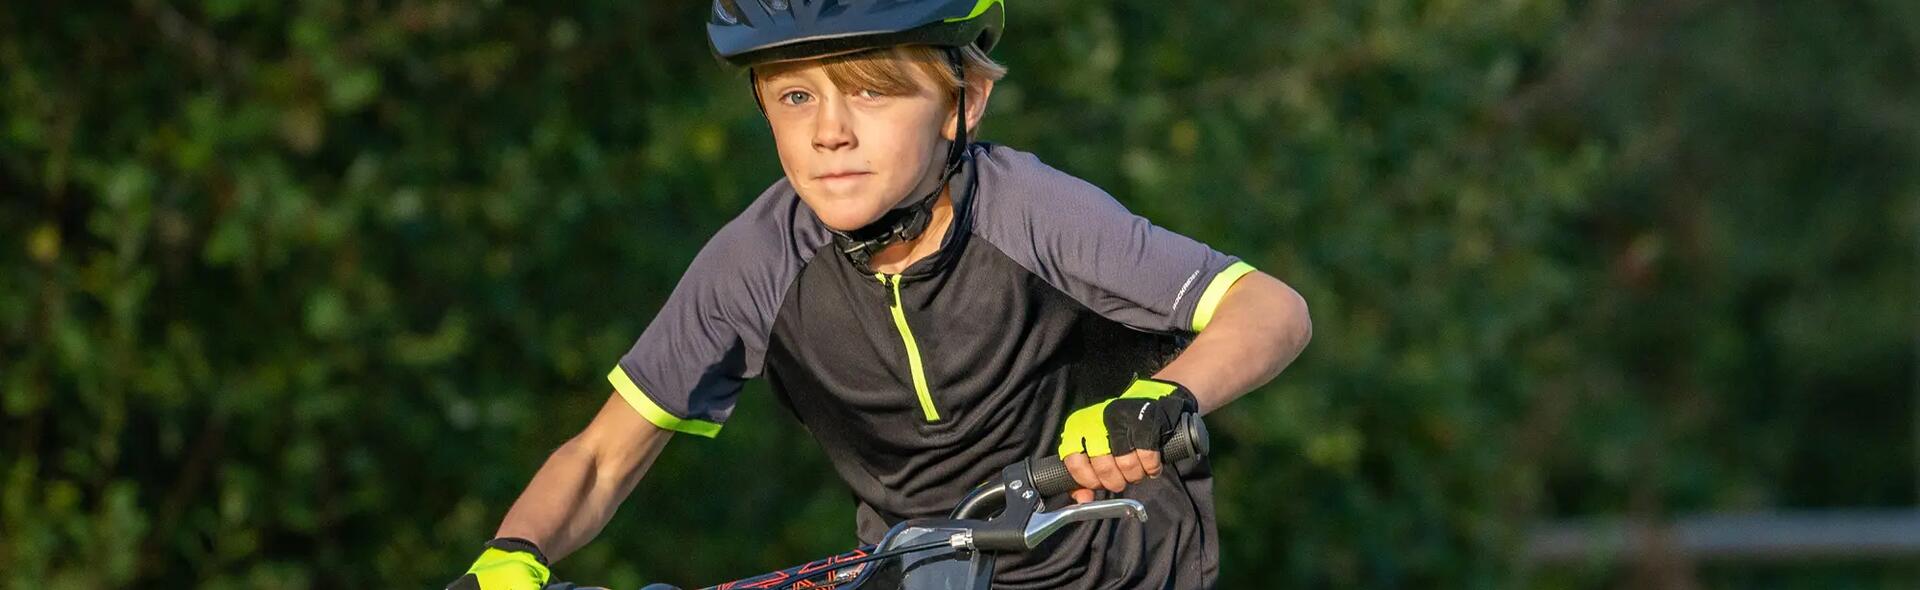 chłopiec w kasku i odzieży rowerowej jadący na rowerze